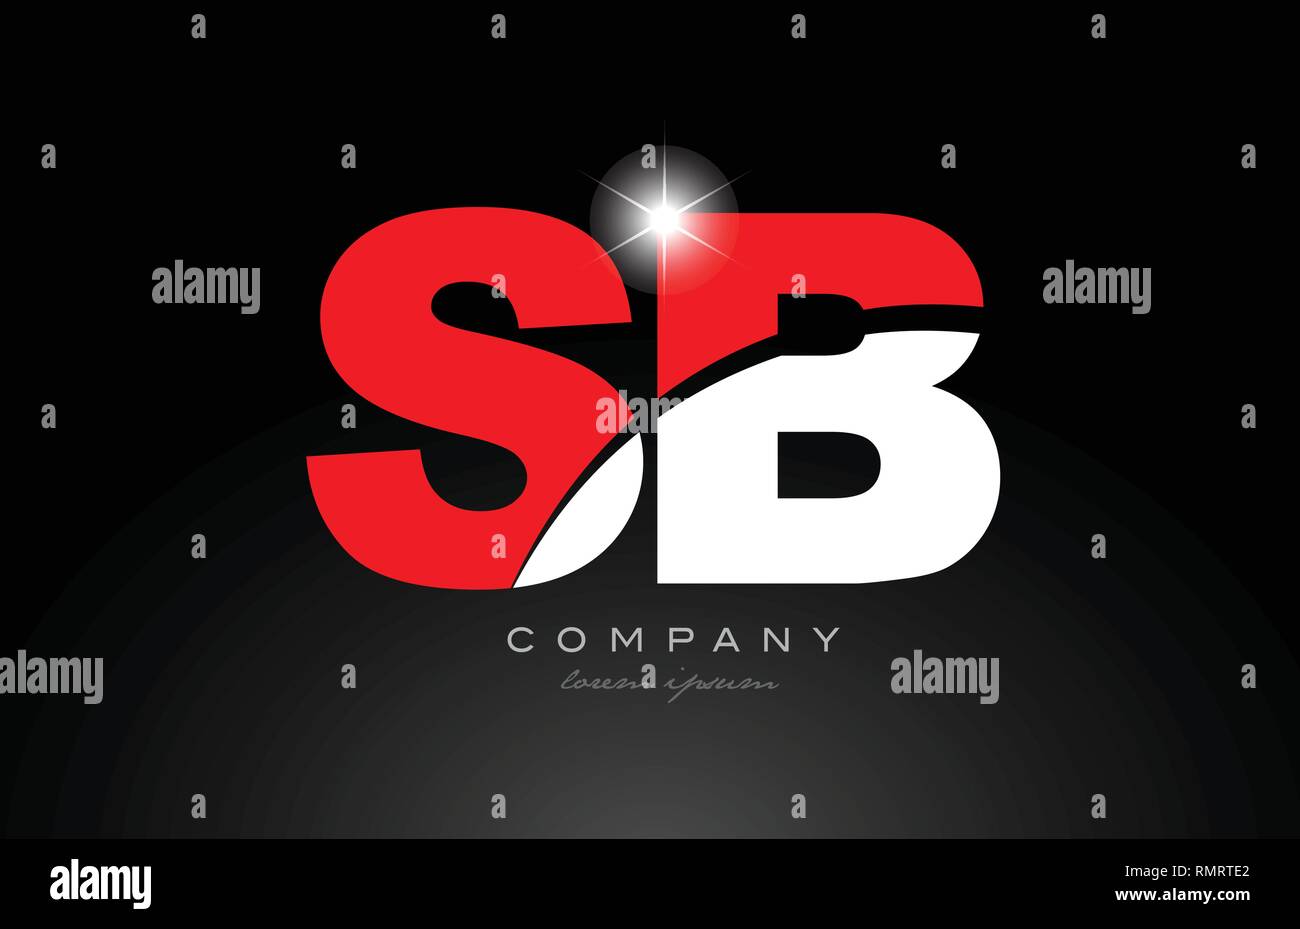 Rot-weiße Buchstaben Kombination sb s b logo Icon Design geeignet für ein Unternehmen oder ein Geschäft Stock Vektor